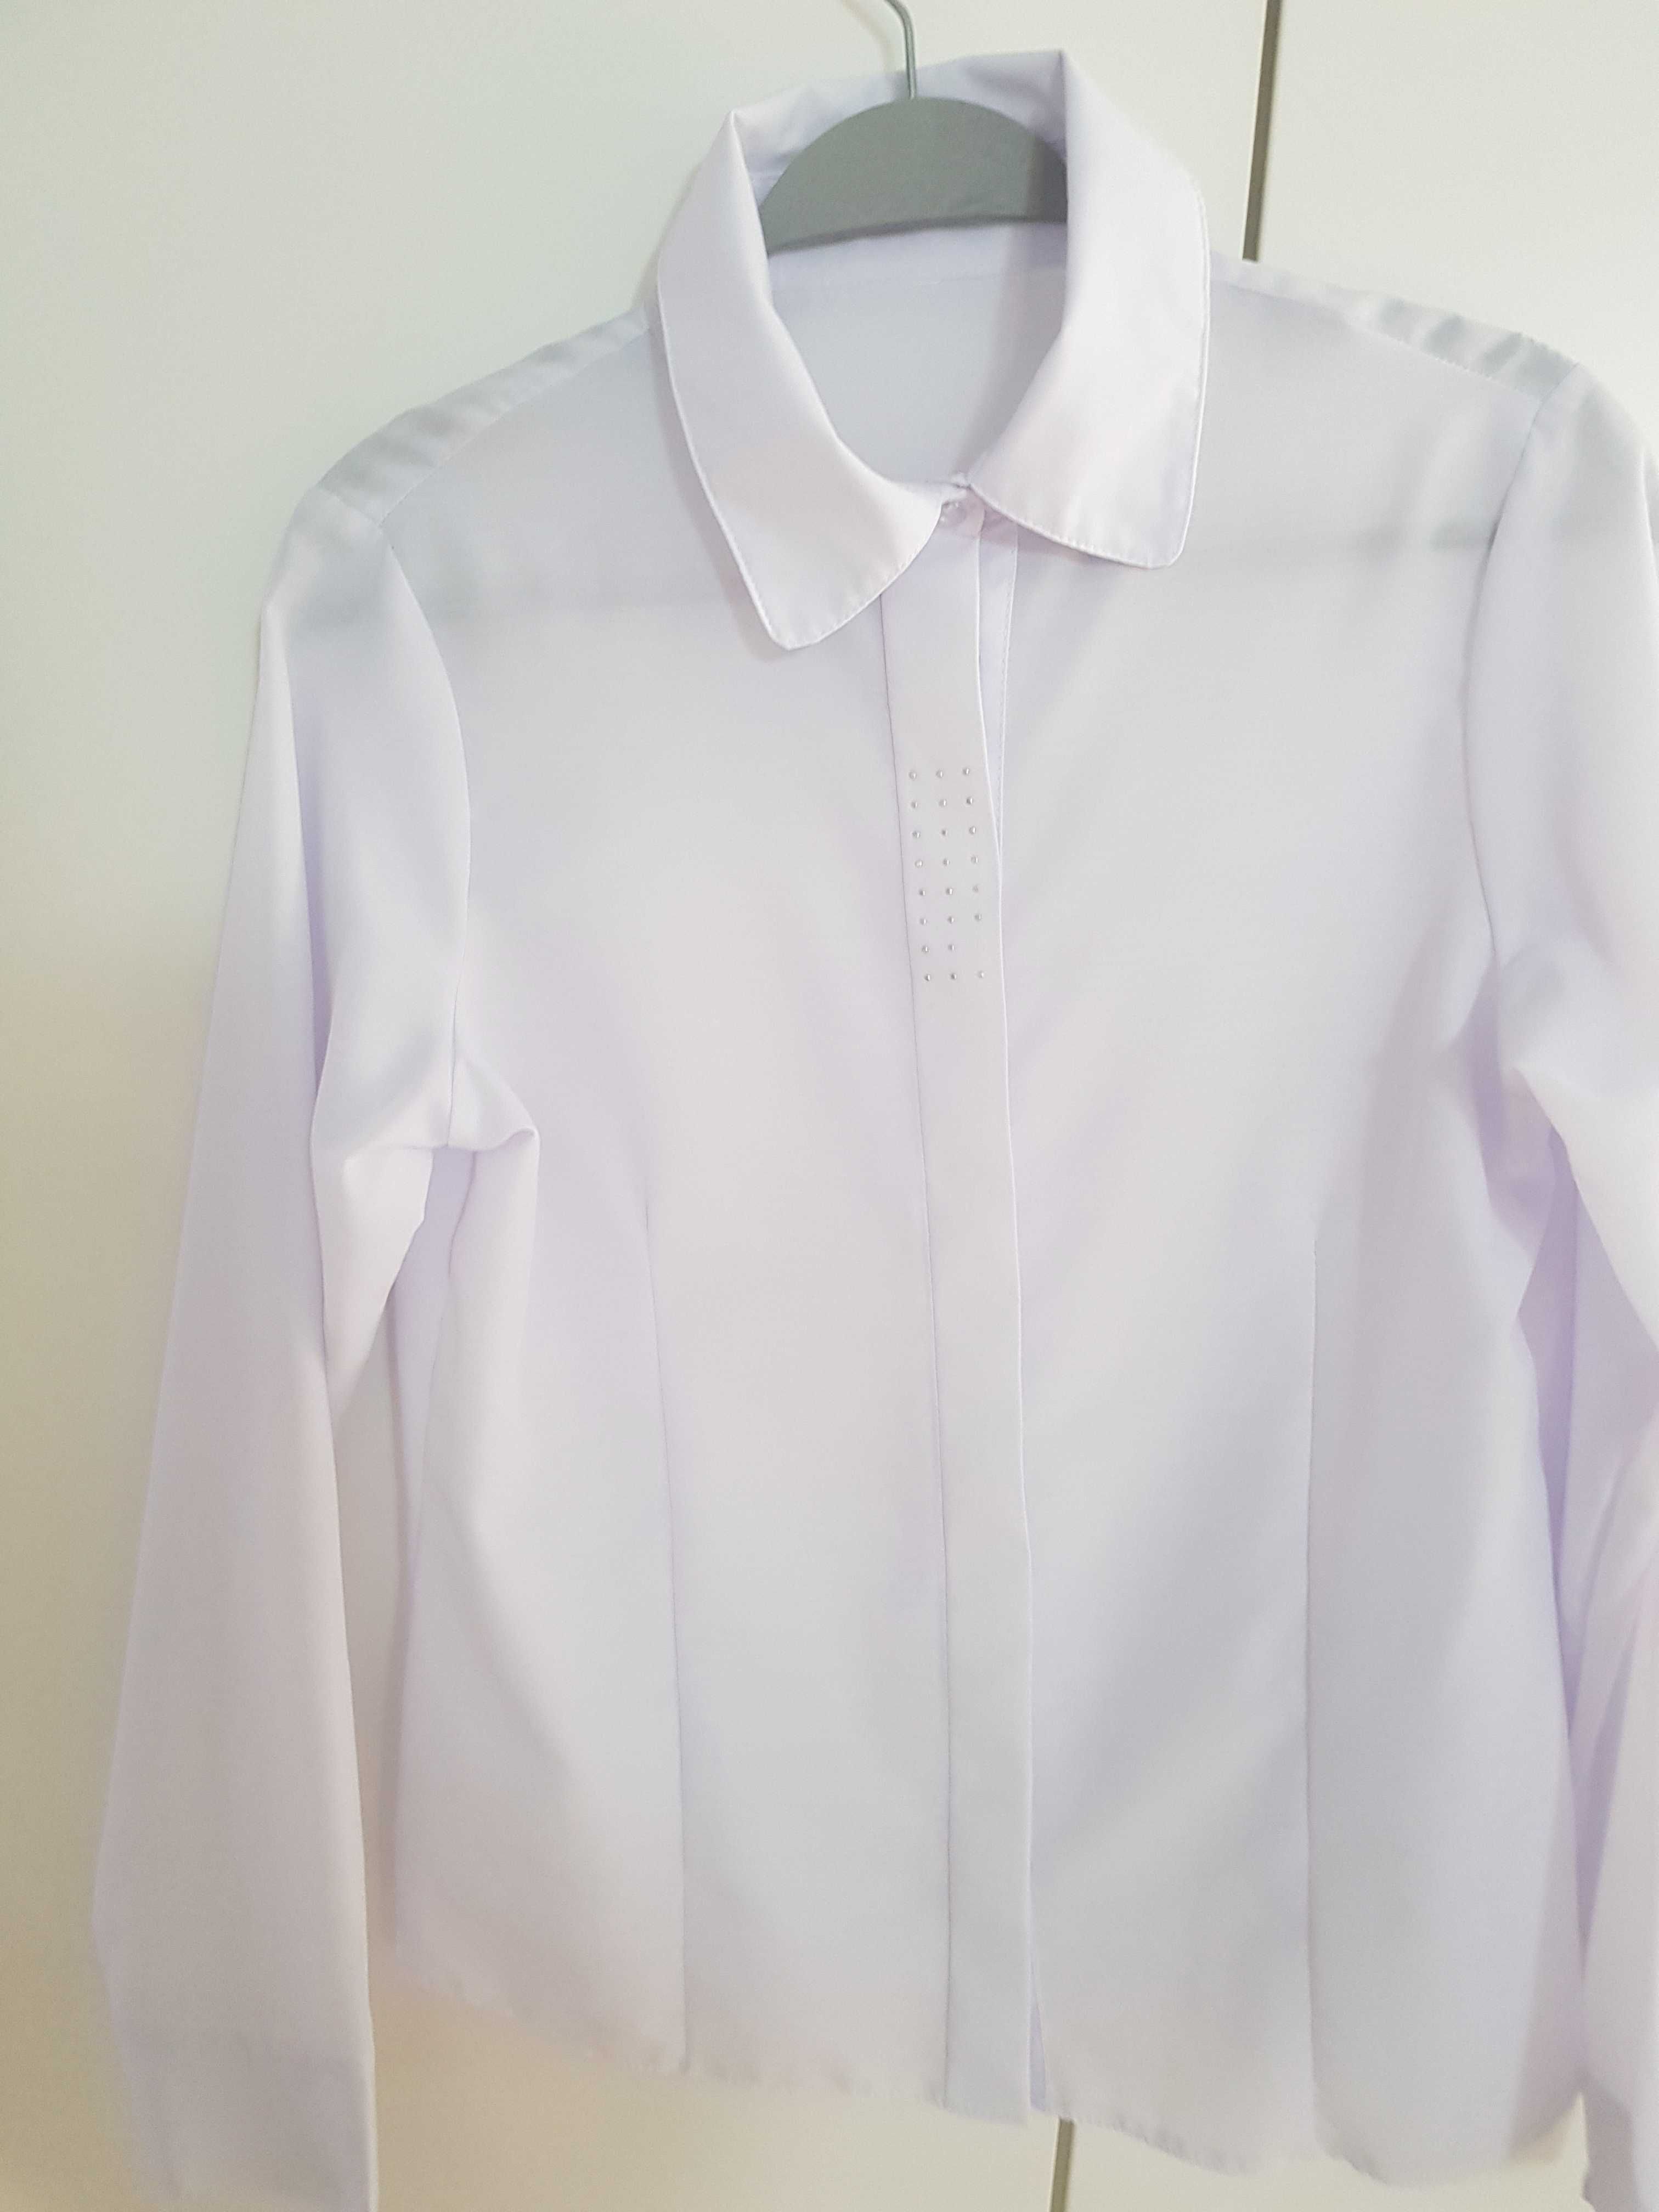 Biała koszula i bluzki do szkoły roz. 164 - 3 sztuki